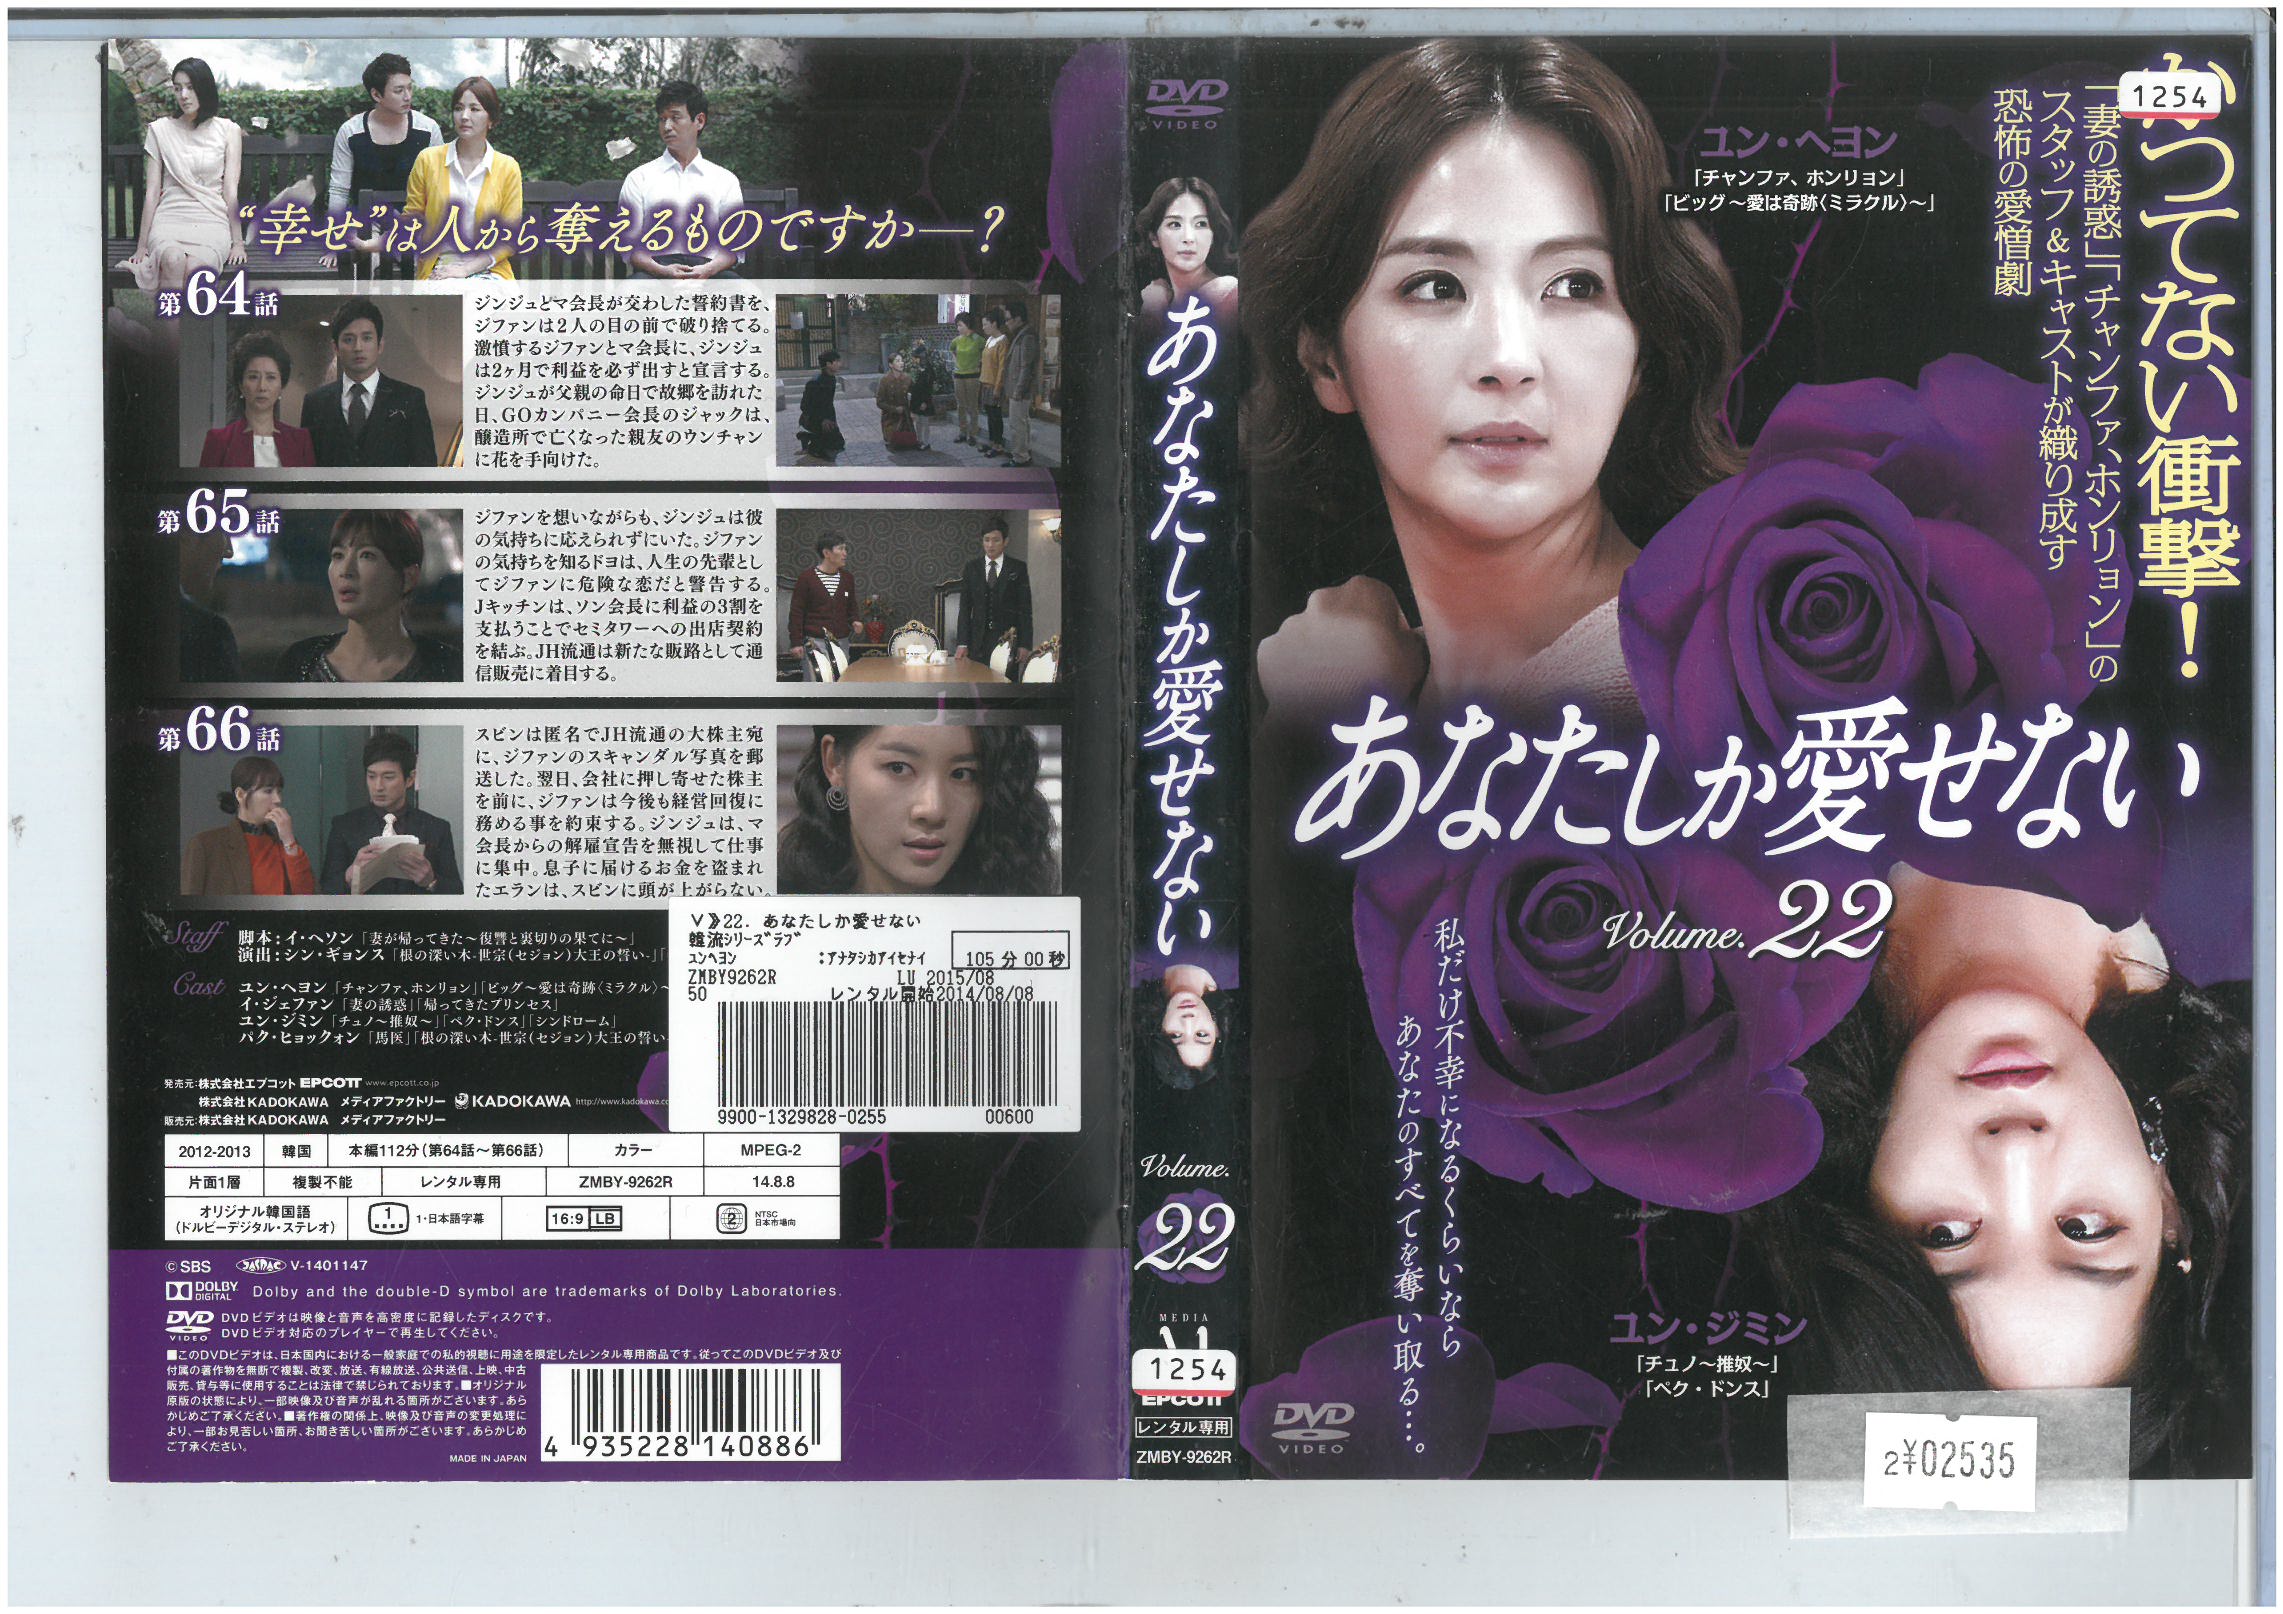 あなたしか愛せない Vol.22 洋画 ZMBY-9262R【ケースなし】中古DVD_f